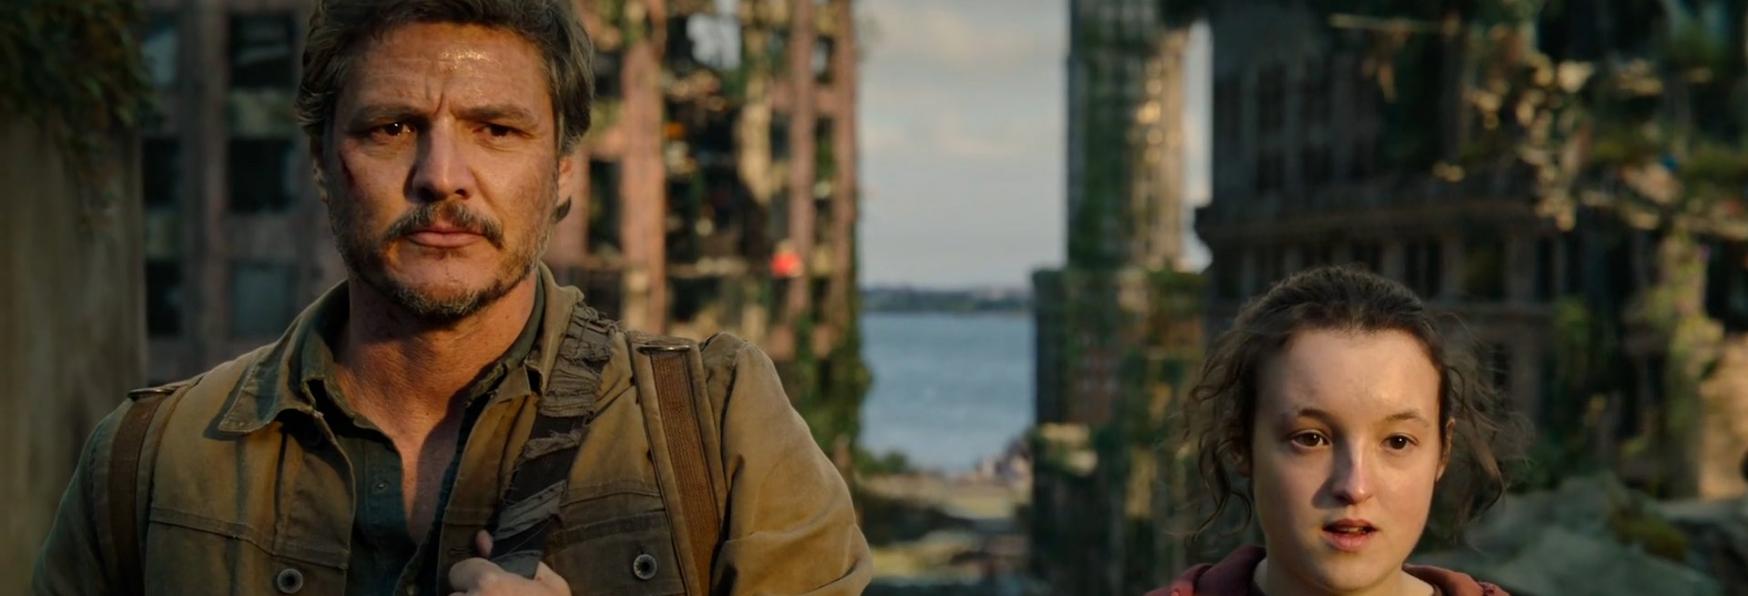 The Last of Us 1x05: il Trailer del Prossimo Episodio, "Endure and Survive"